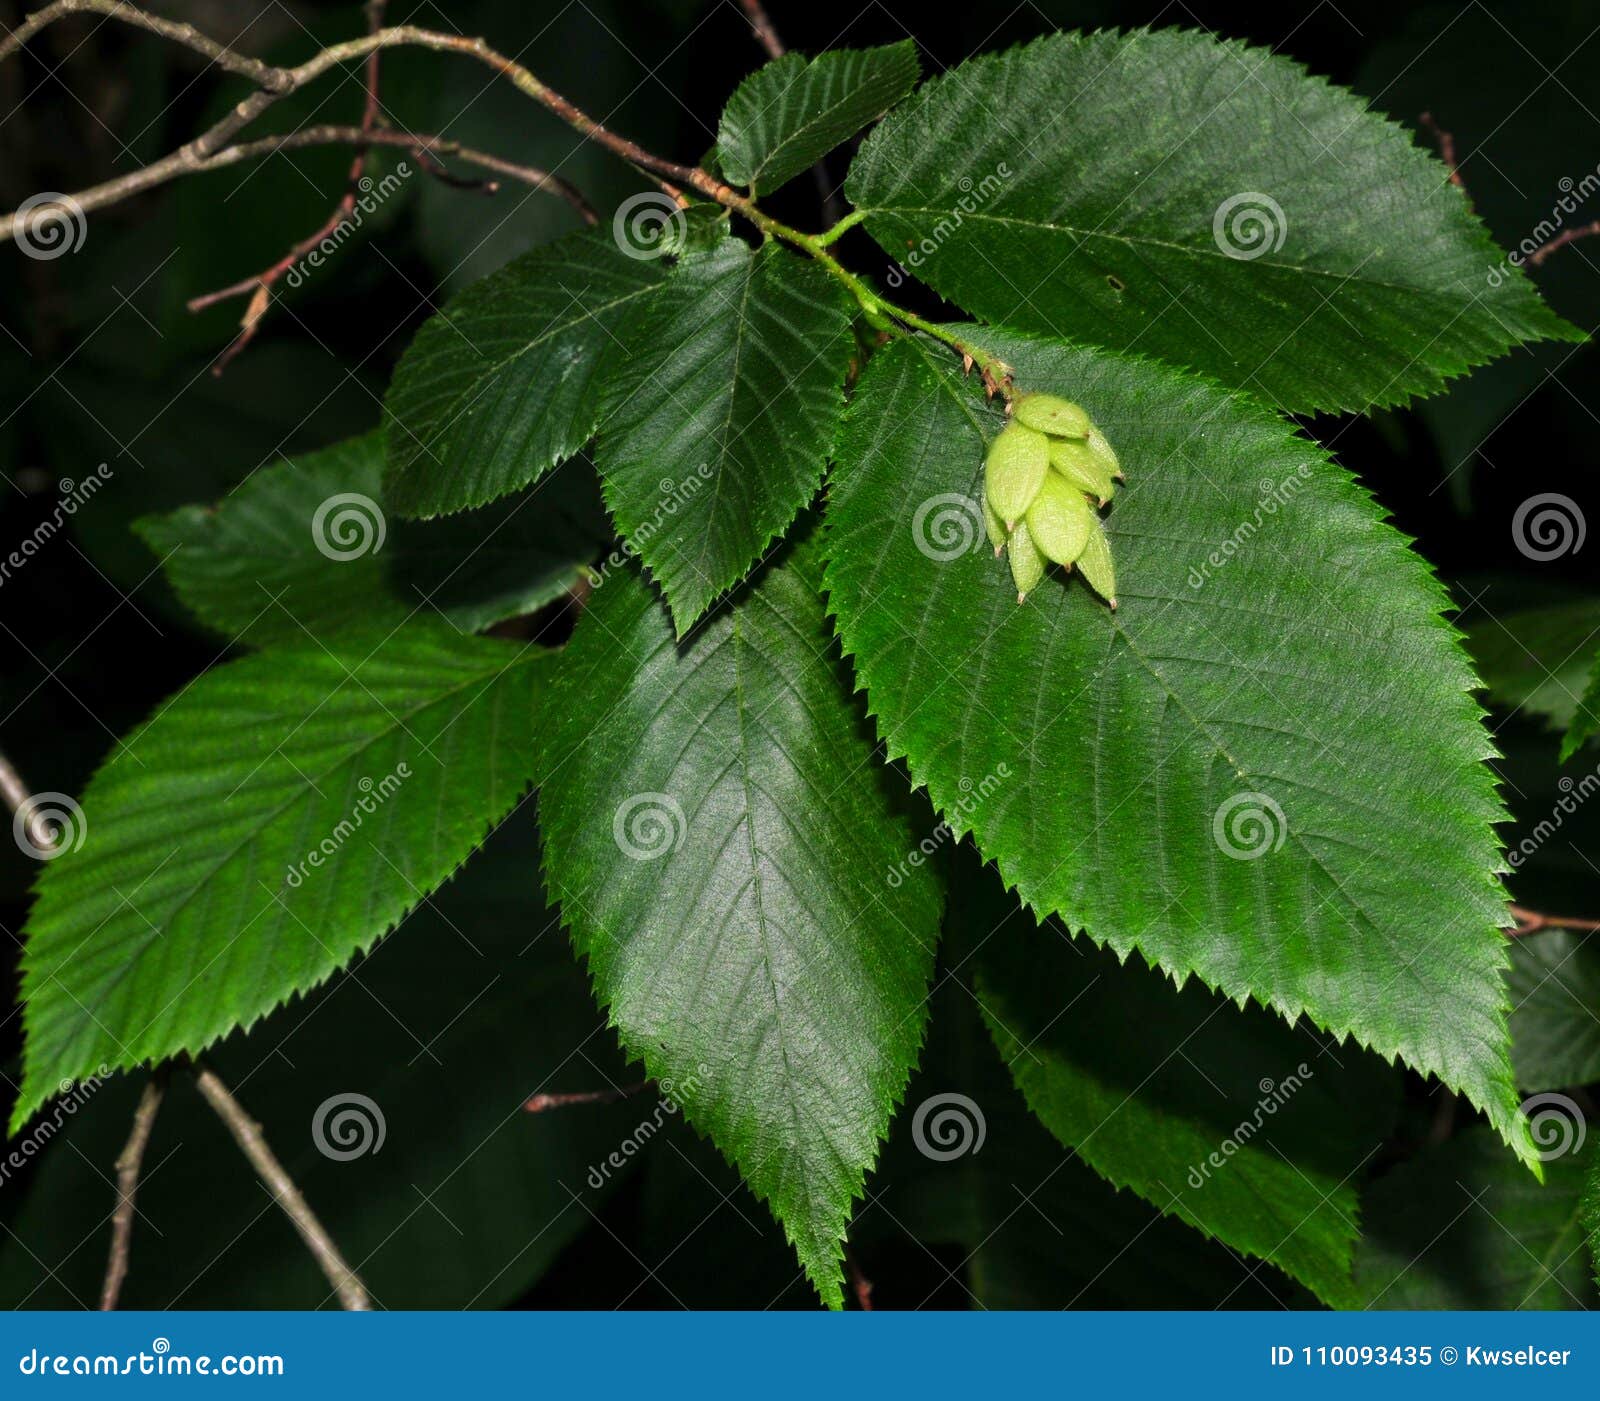 leaves and fruit of hop hornbeam tree.